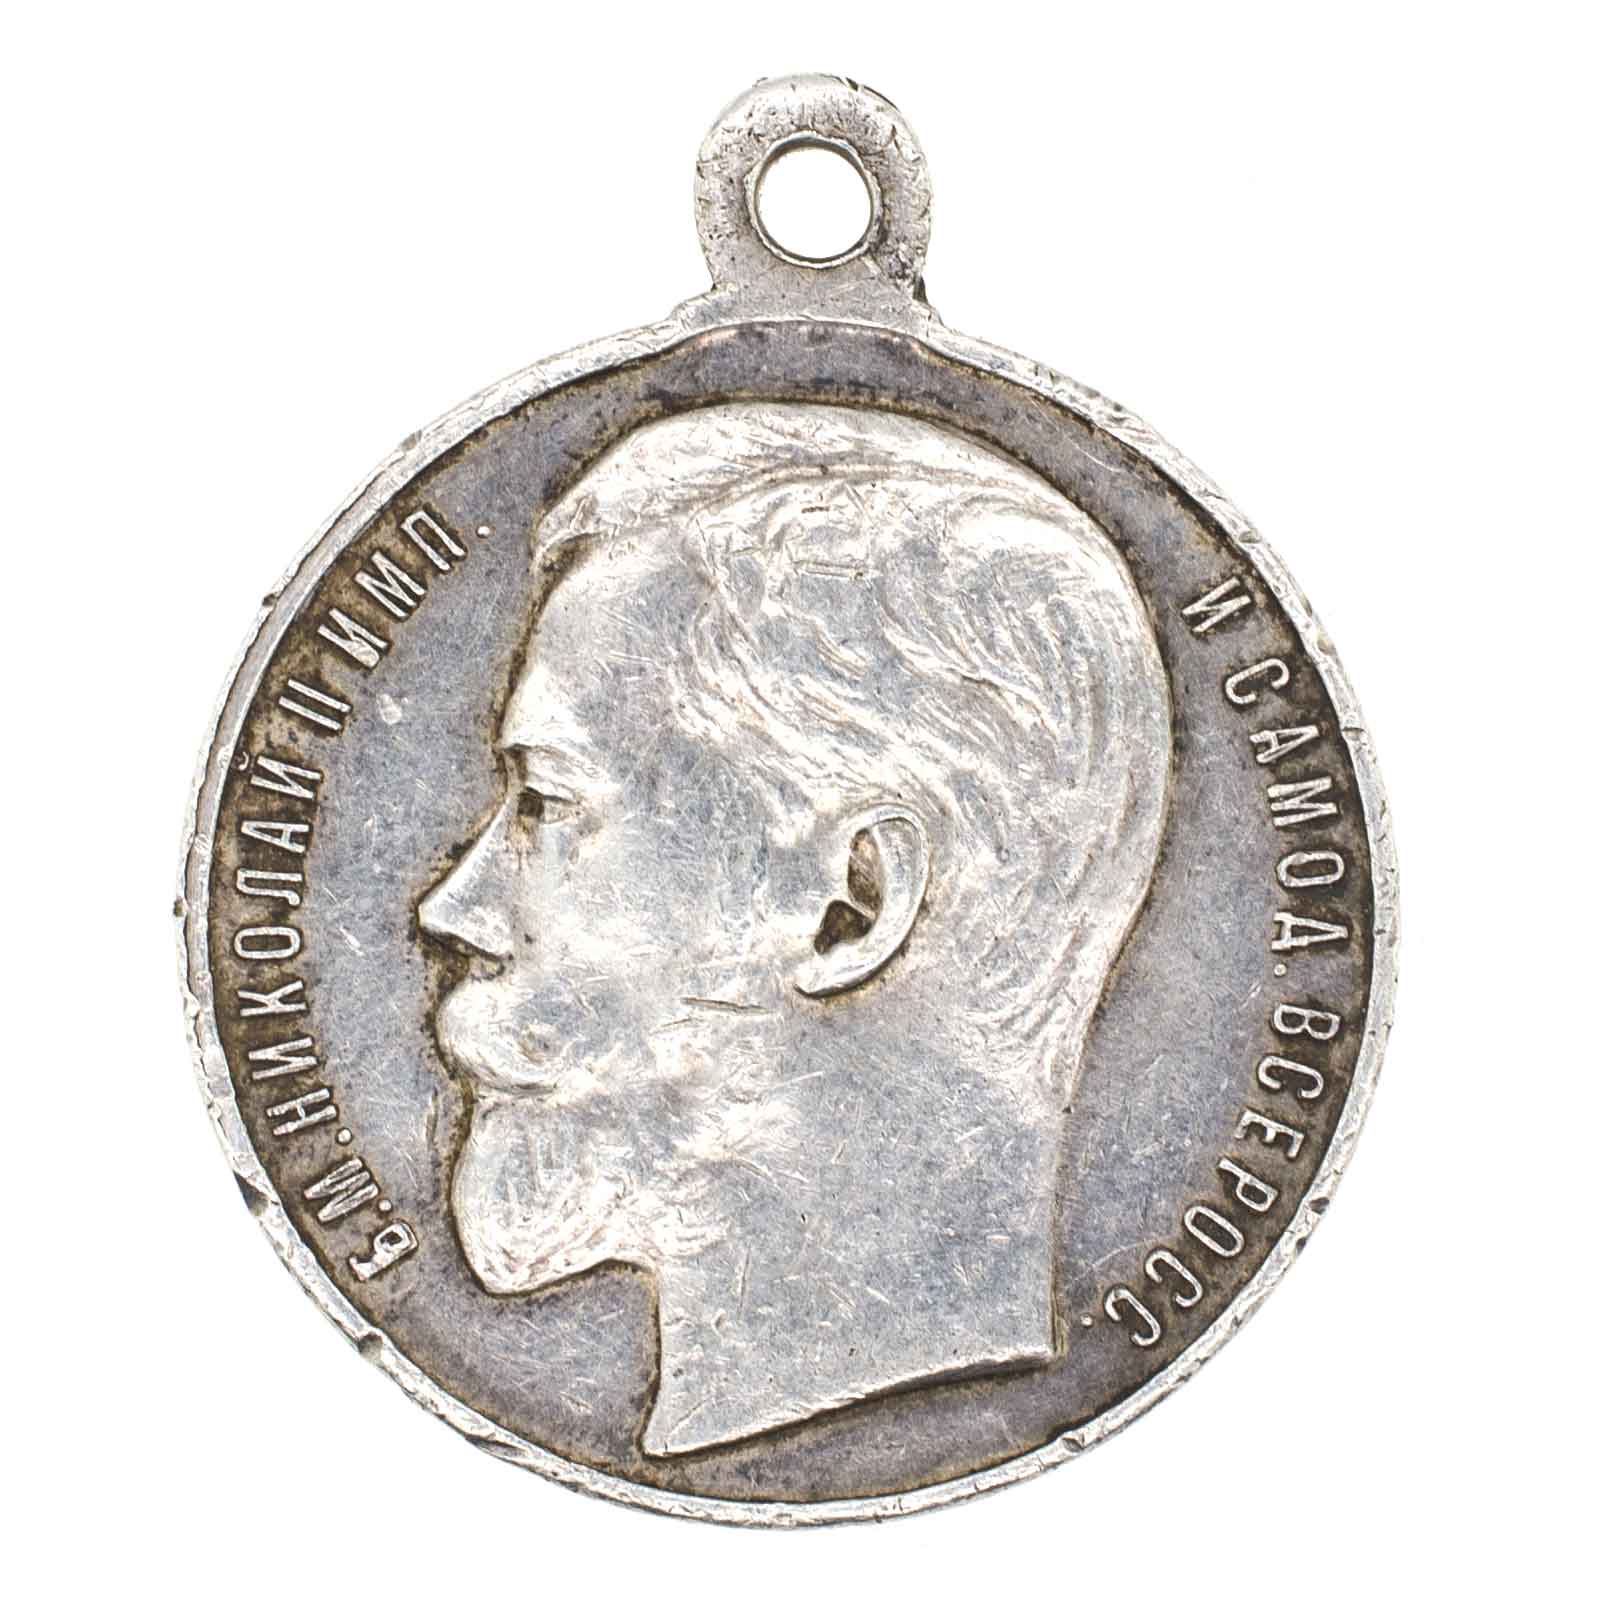 Георгиевская Медаль ("За Храбрость") 4 ст № 1.004.038 (образца 1913 г).